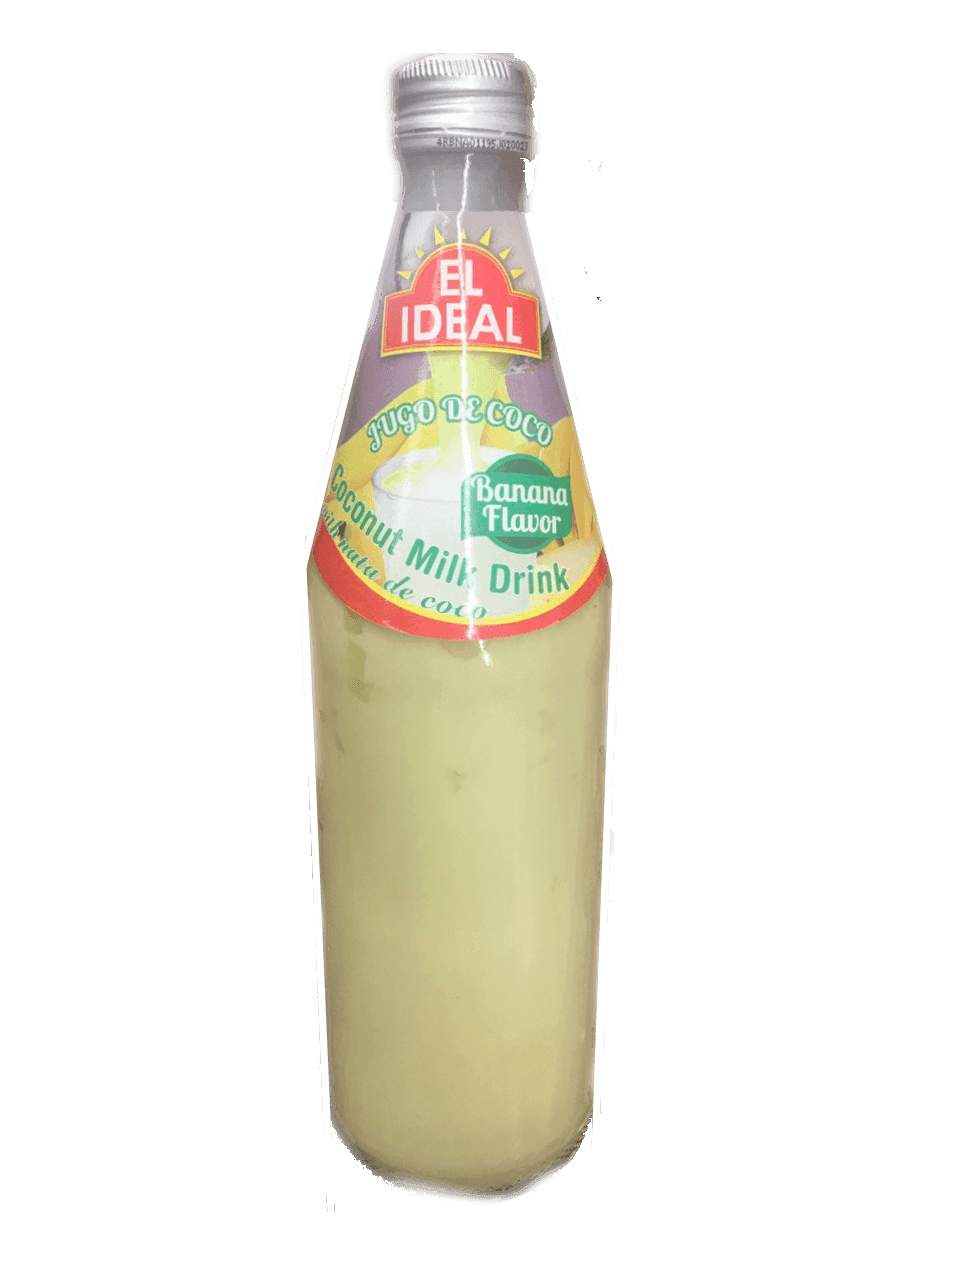 El Ideal - Coconut Milk Drink Banana Flavor 17oz